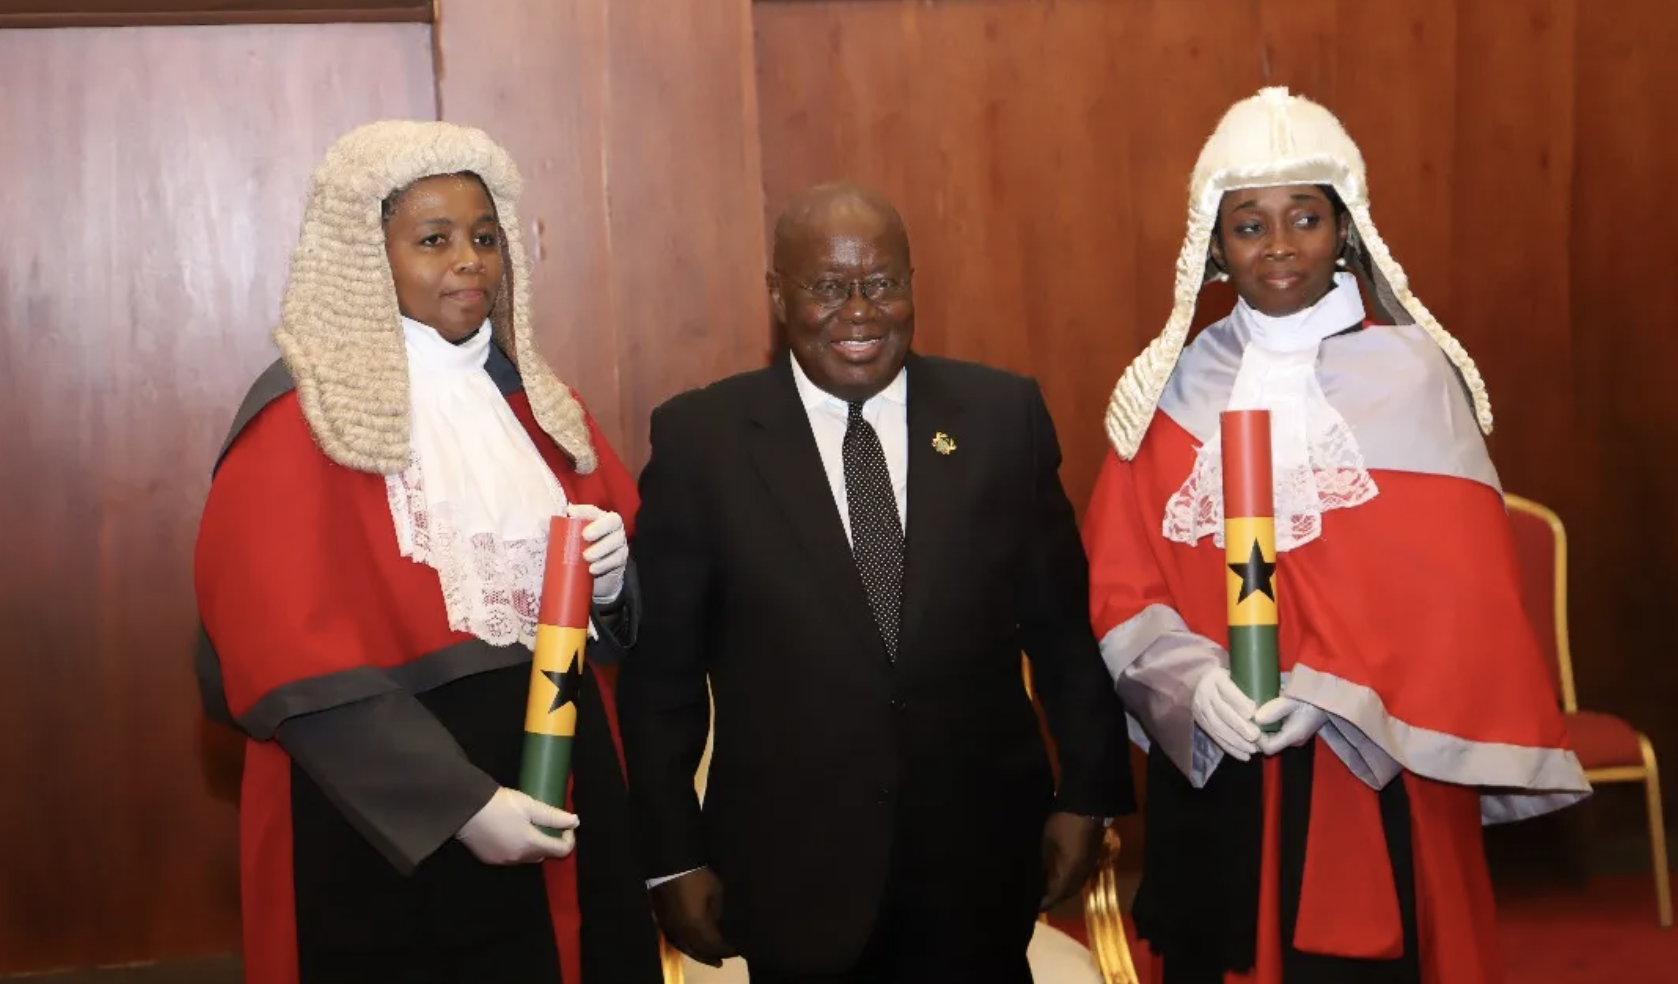 High court judges